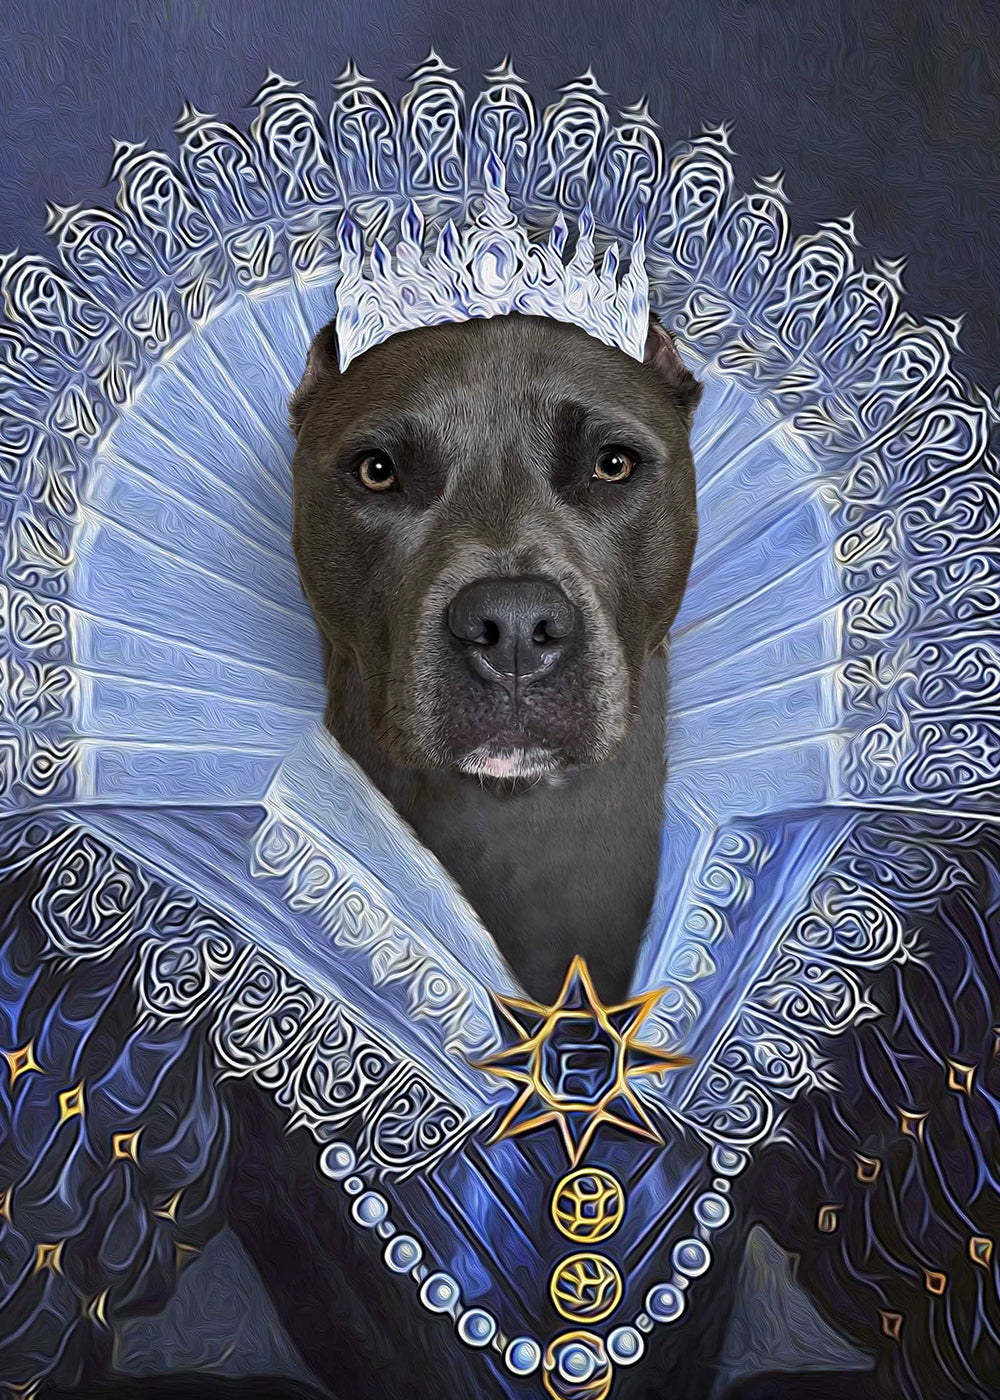 Her Majesty Custom Pet Portrait Poster - Noble Pawtrait